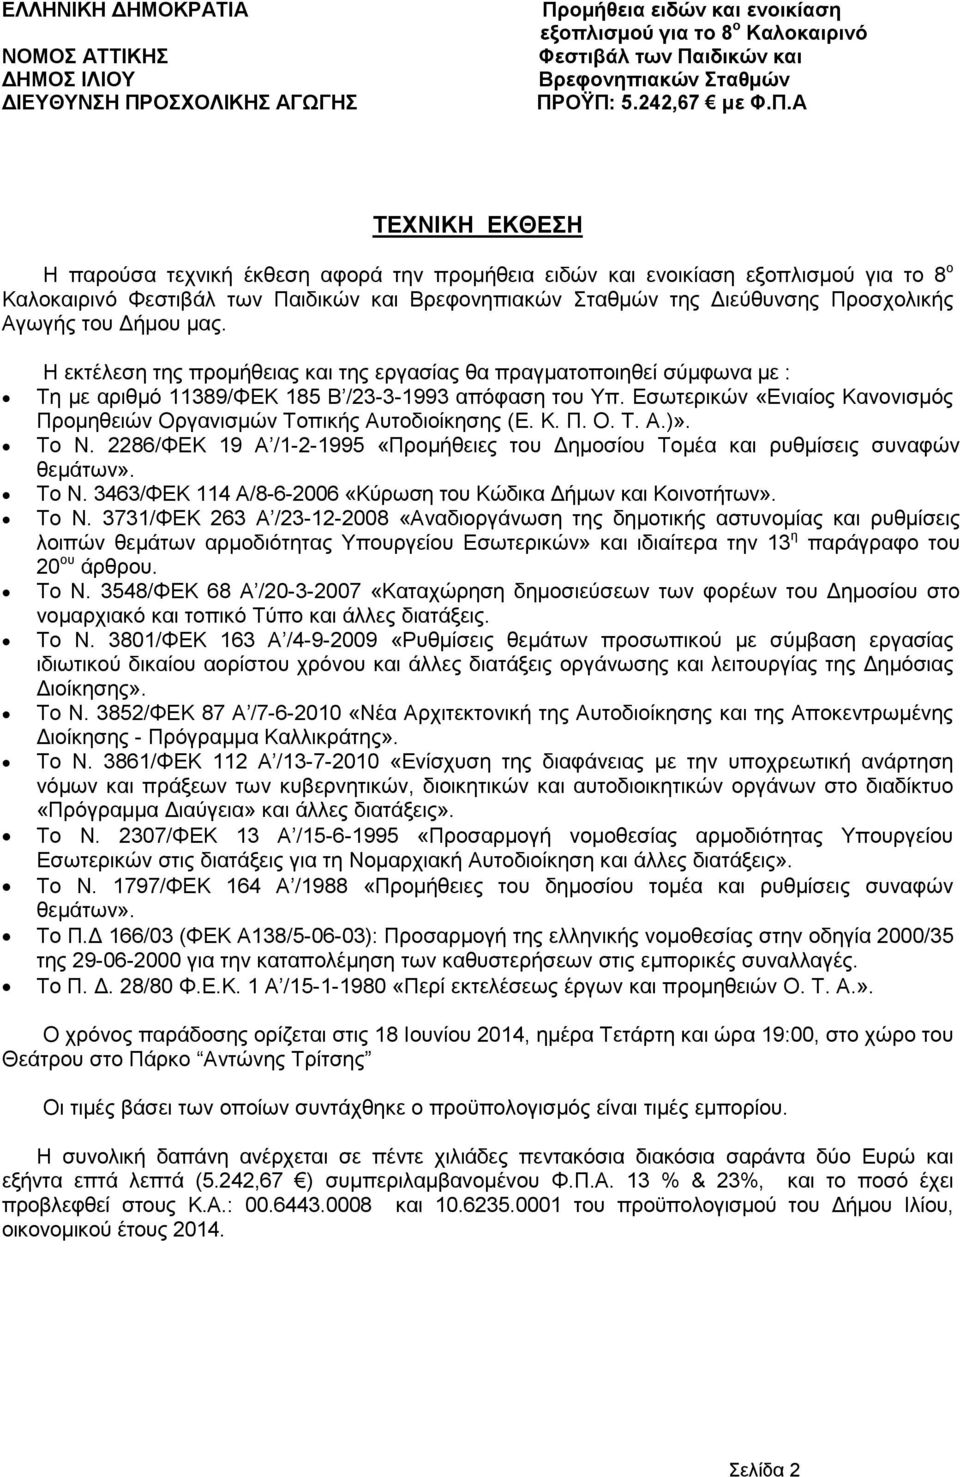 Εσωτερικών «Ενιαίος Κανονισµός Προµηθειών Οργανισµών Τοπικής Αυτοδιοίκησης (Ε. Κ. Π. Ο. Τ. Α.)». Το Ν. 2286/ΦΕΚ 19 Α /1-2-1995 «Προµήθειες του ηµοσίου Τοµέα και ρυθµίσεις συναφών θεµάτων». Το Ν. 3463/ΦΕΚ 114 Α/8-6-2006 «Κύρωση του Κώδικα ήµων και Κοινοτήτων».